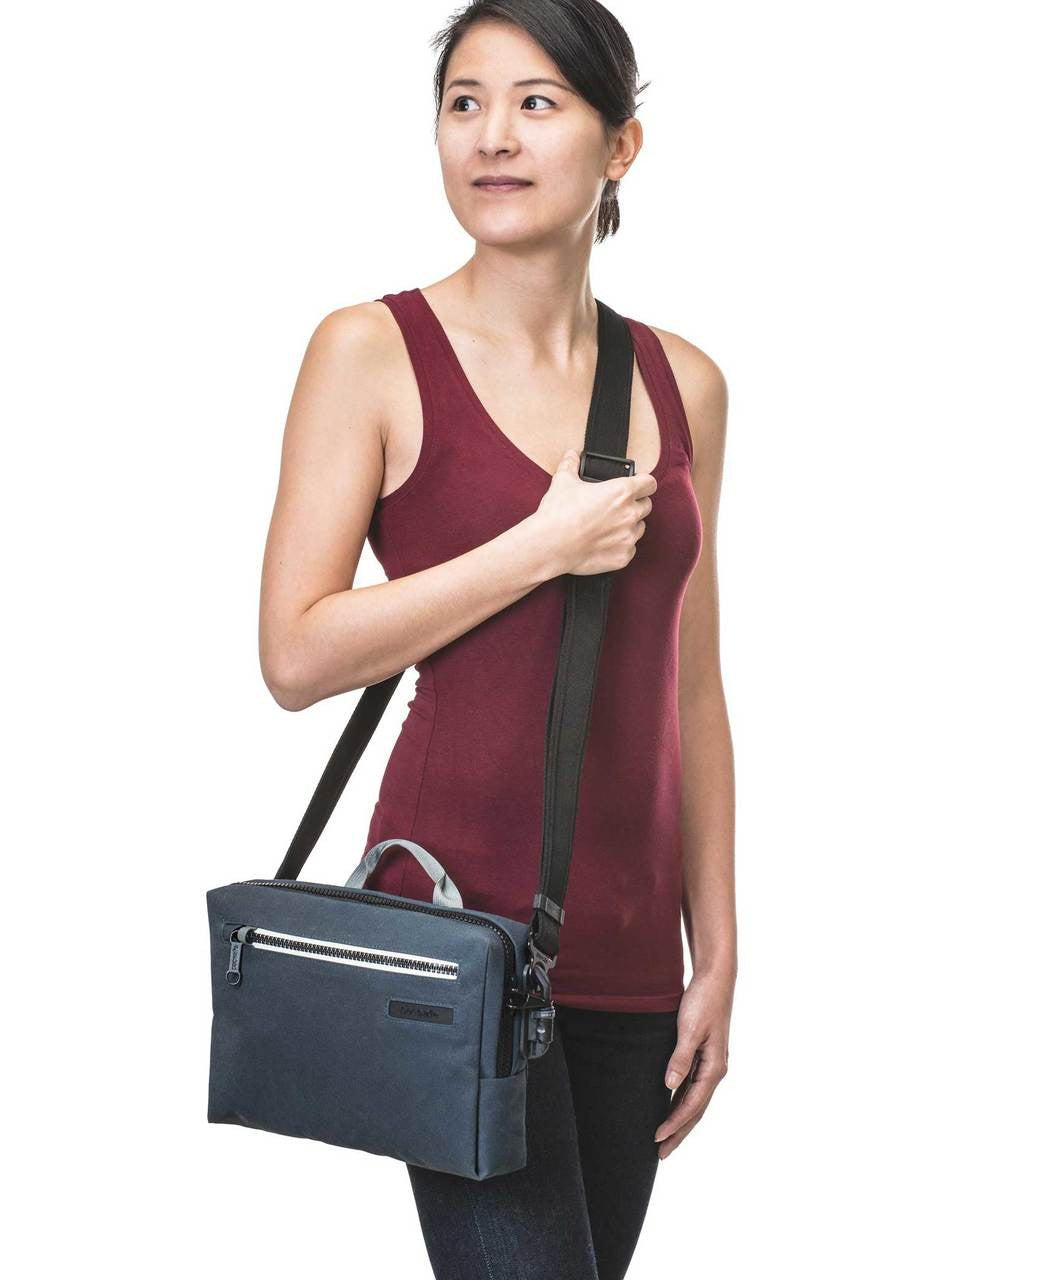 Pacsafe Intasafe anti-theft sling bag